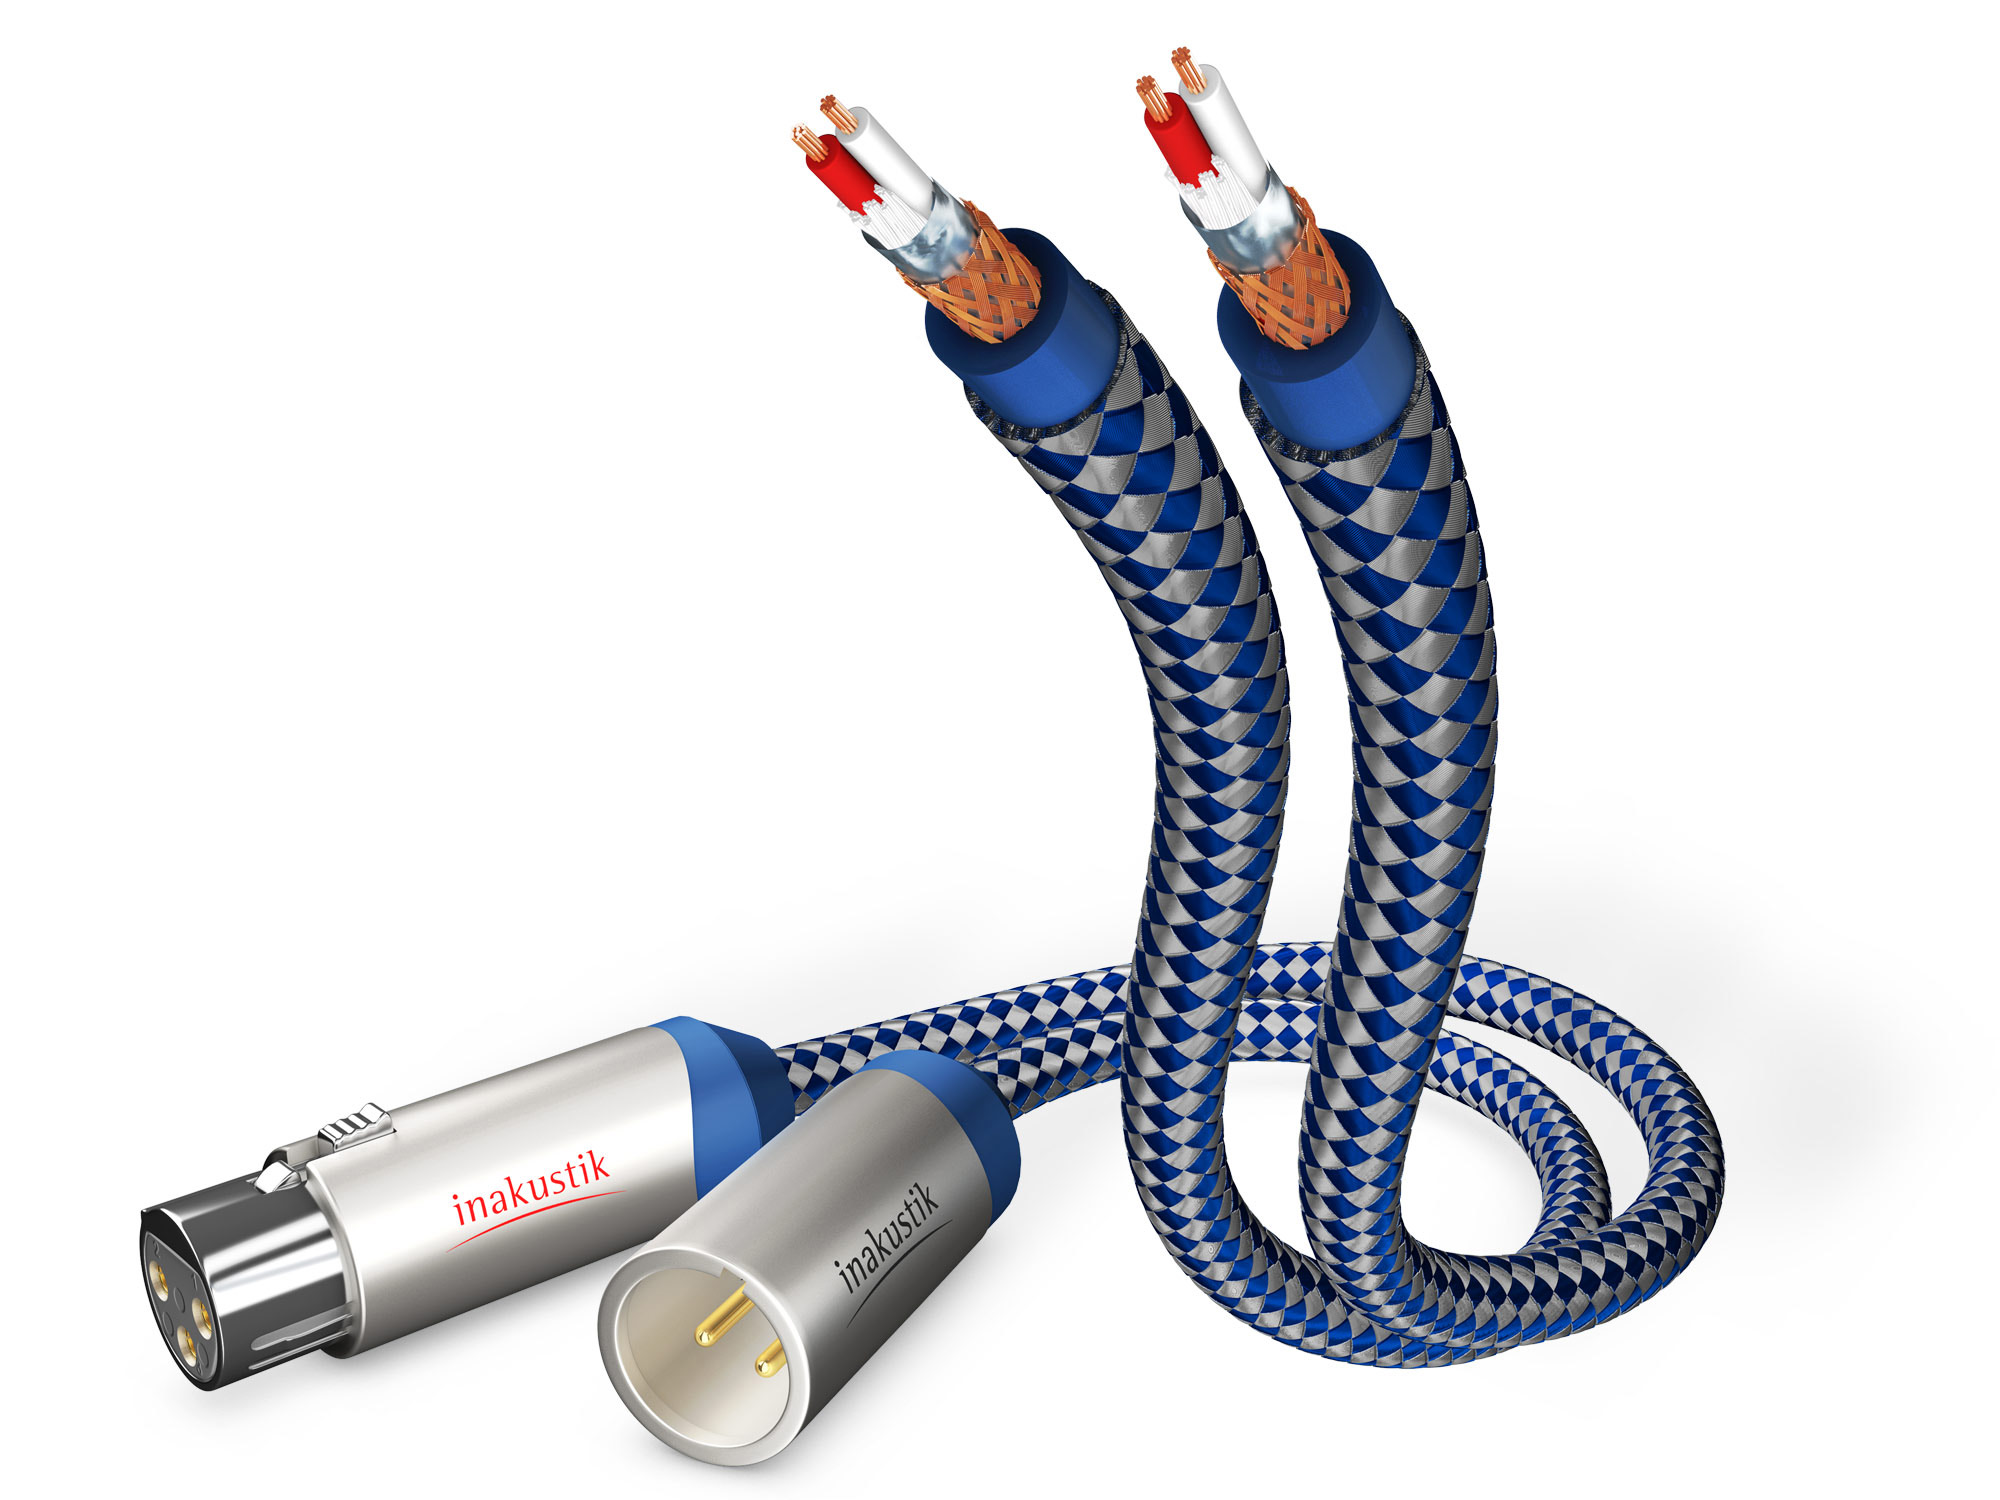 INAKUSTIK Premium XLR 1,5m audio cable